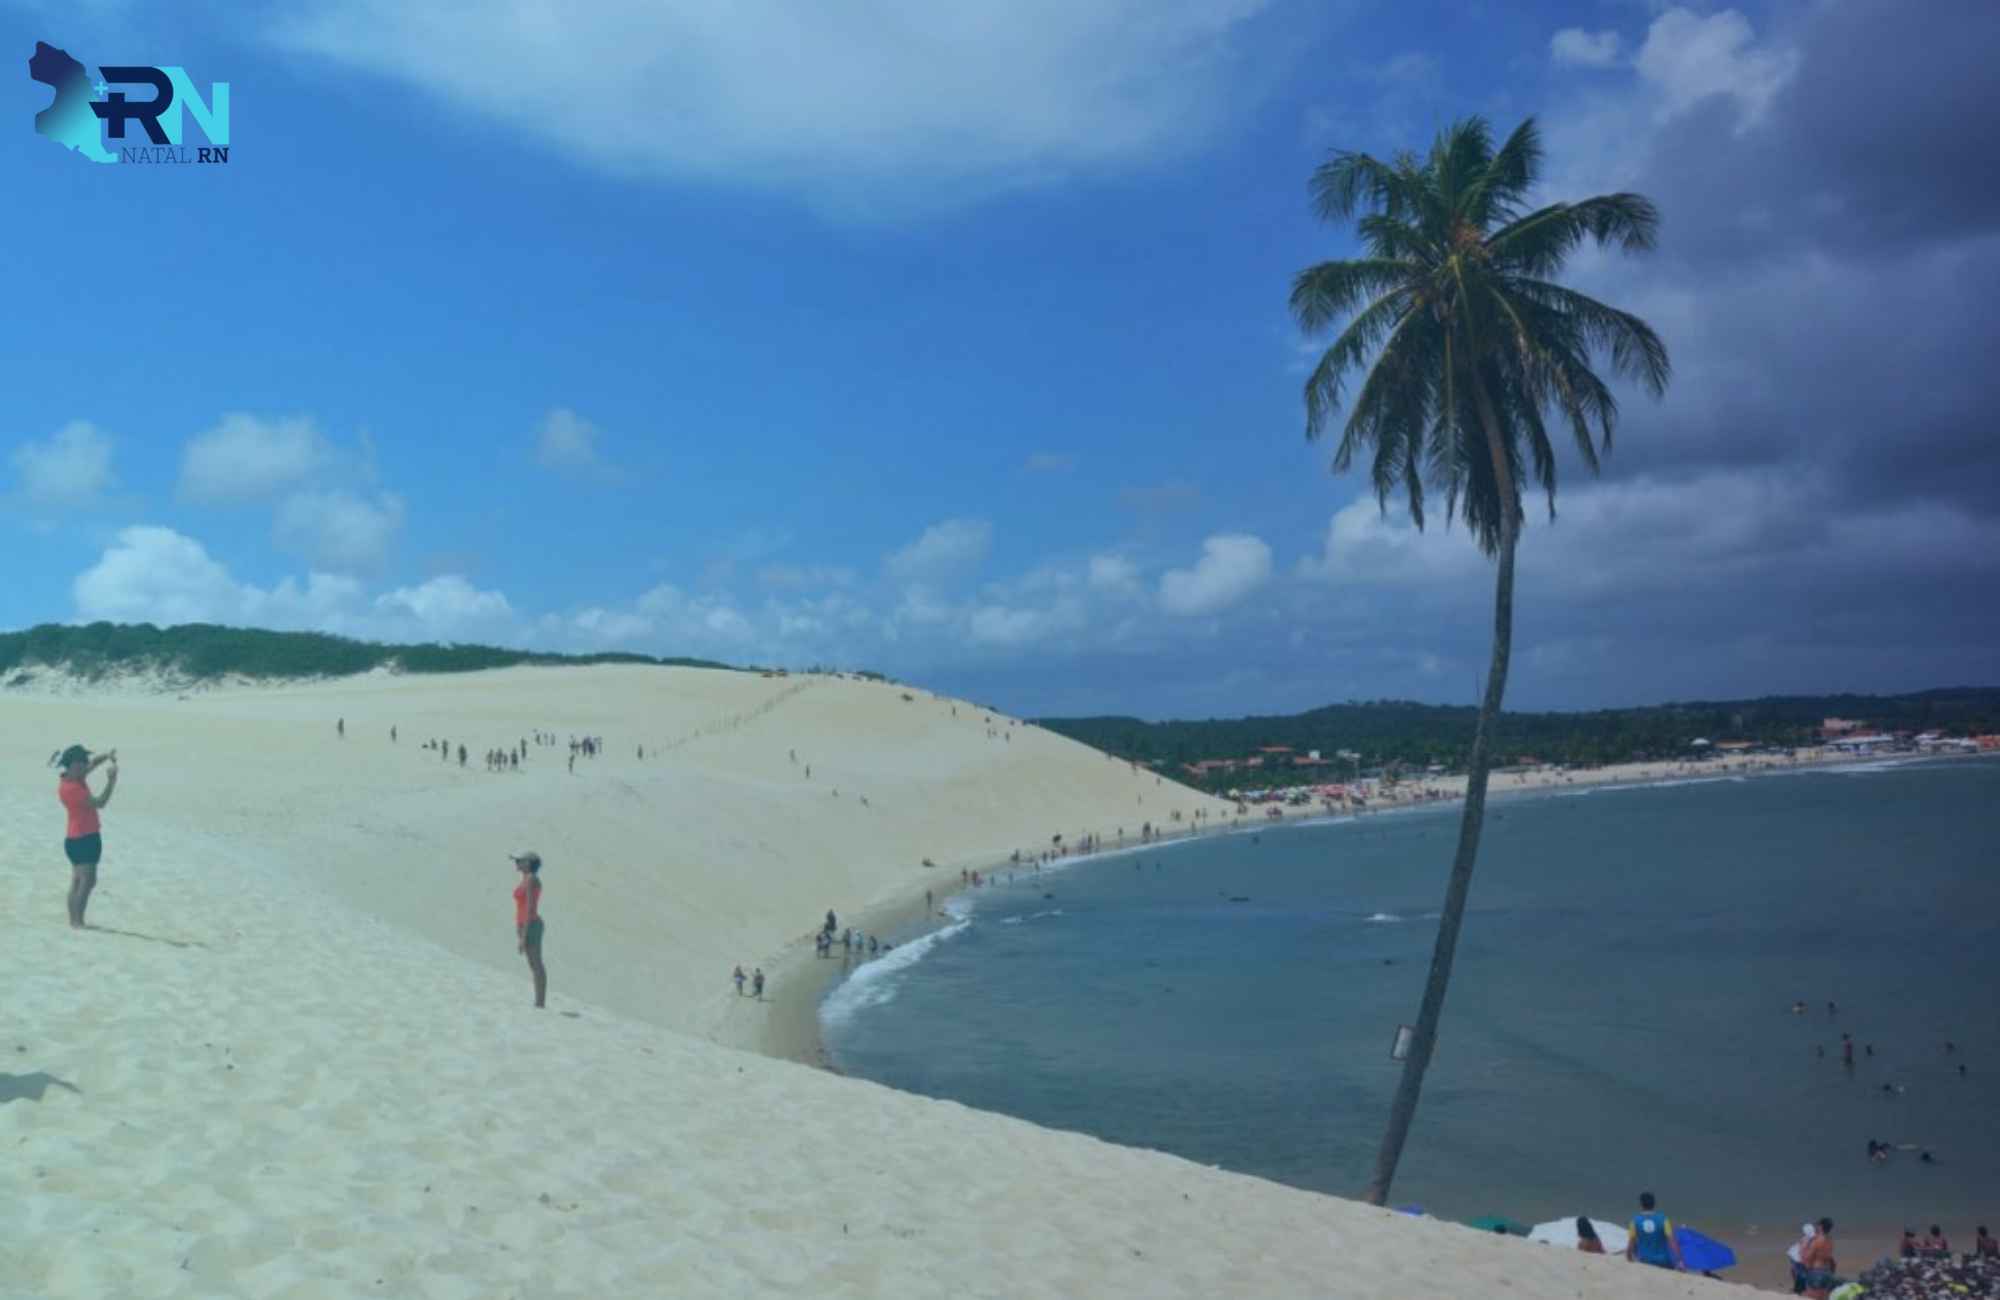 Descubra a Beleza Inigualável da Praia de Santa Rita Extremoz!